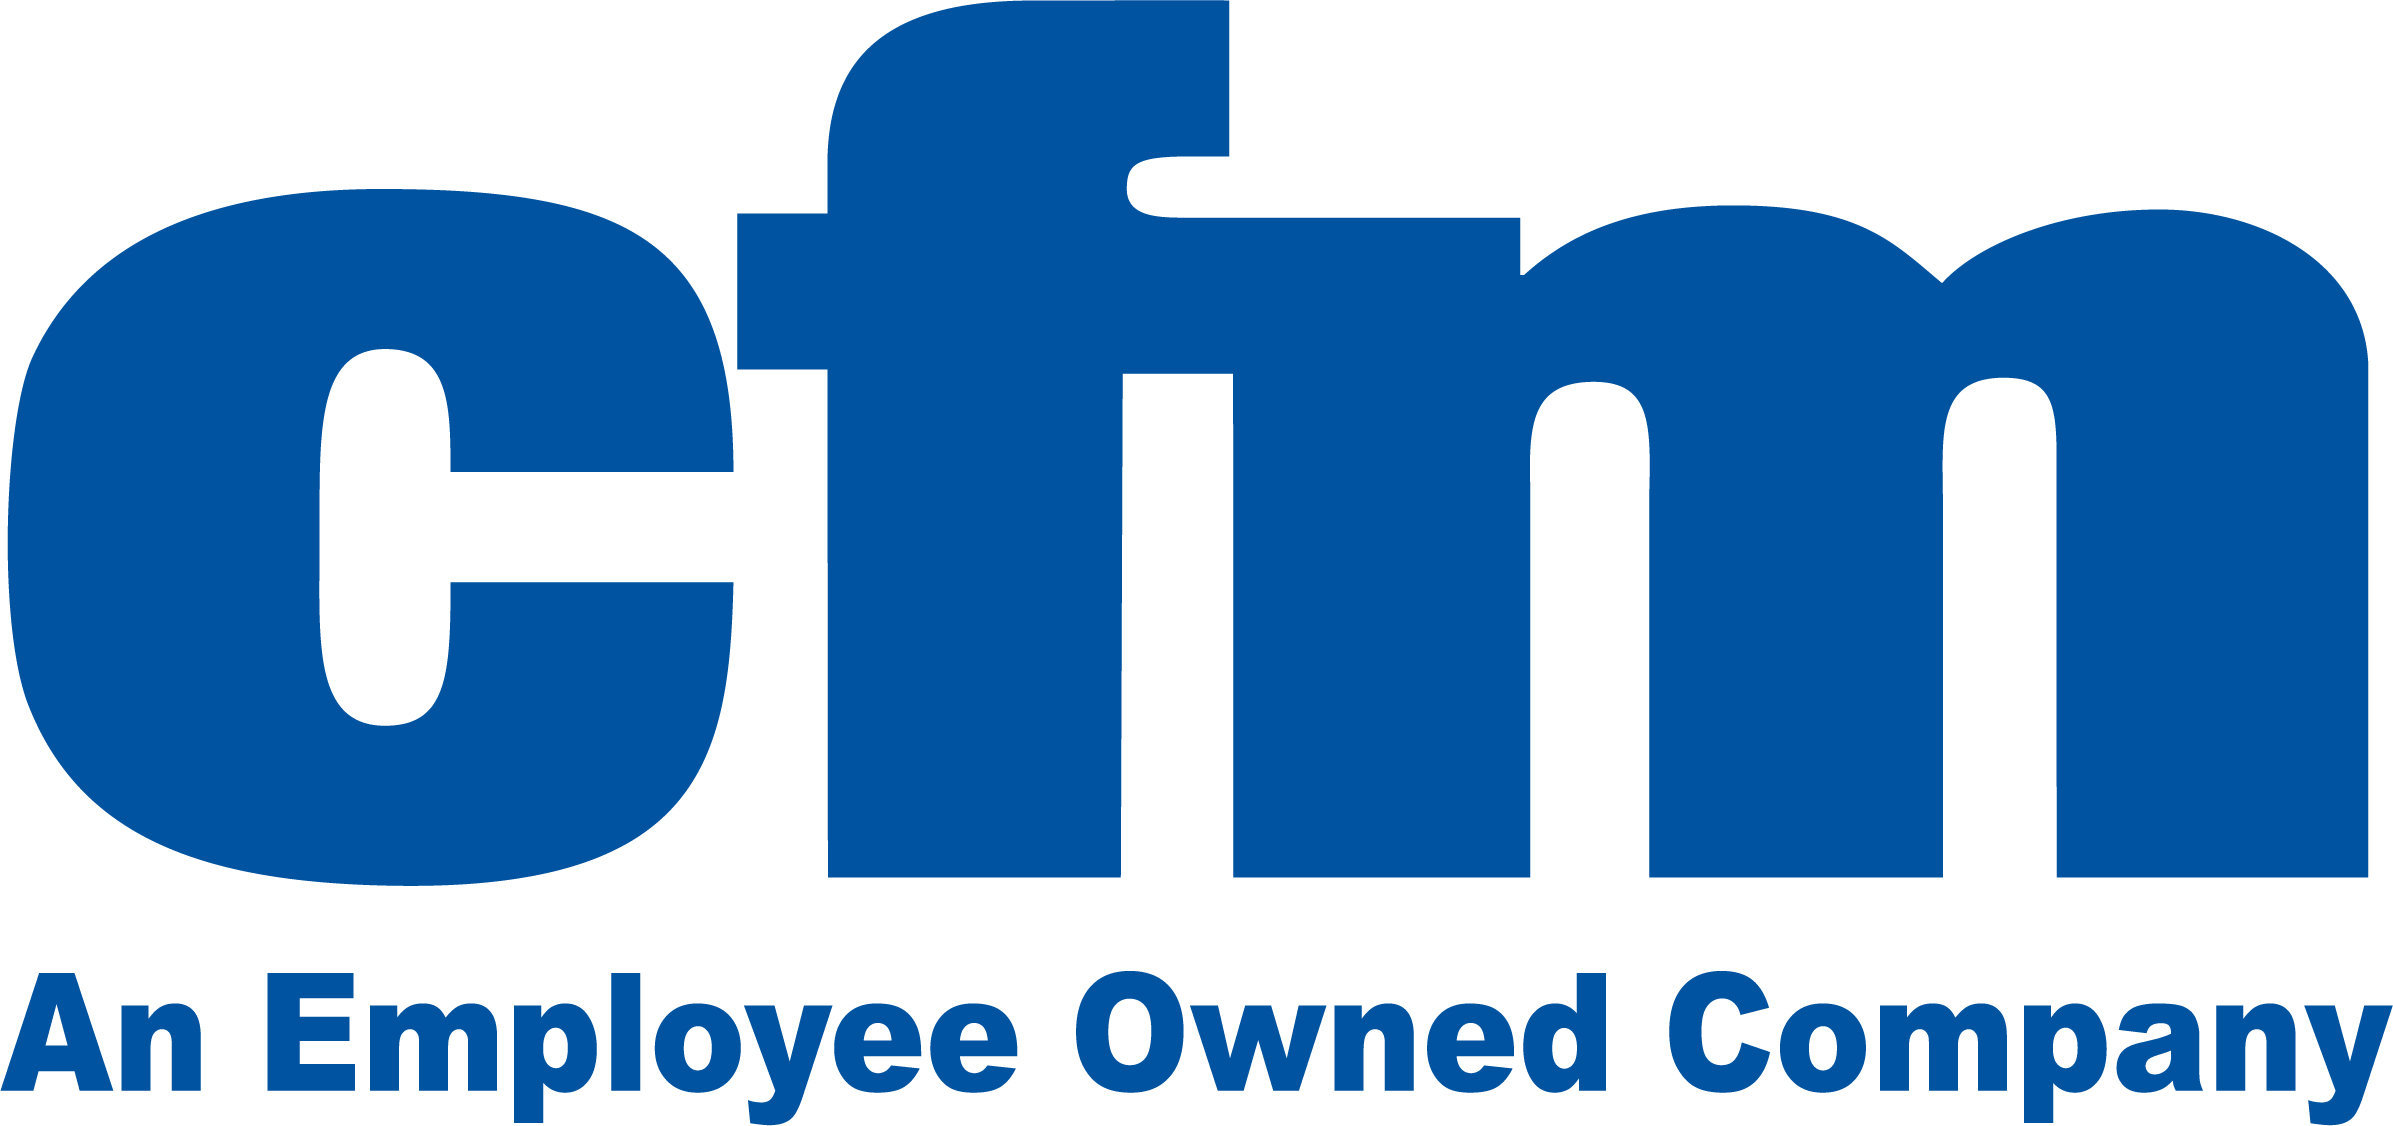 cfm logo - mobile payments partner